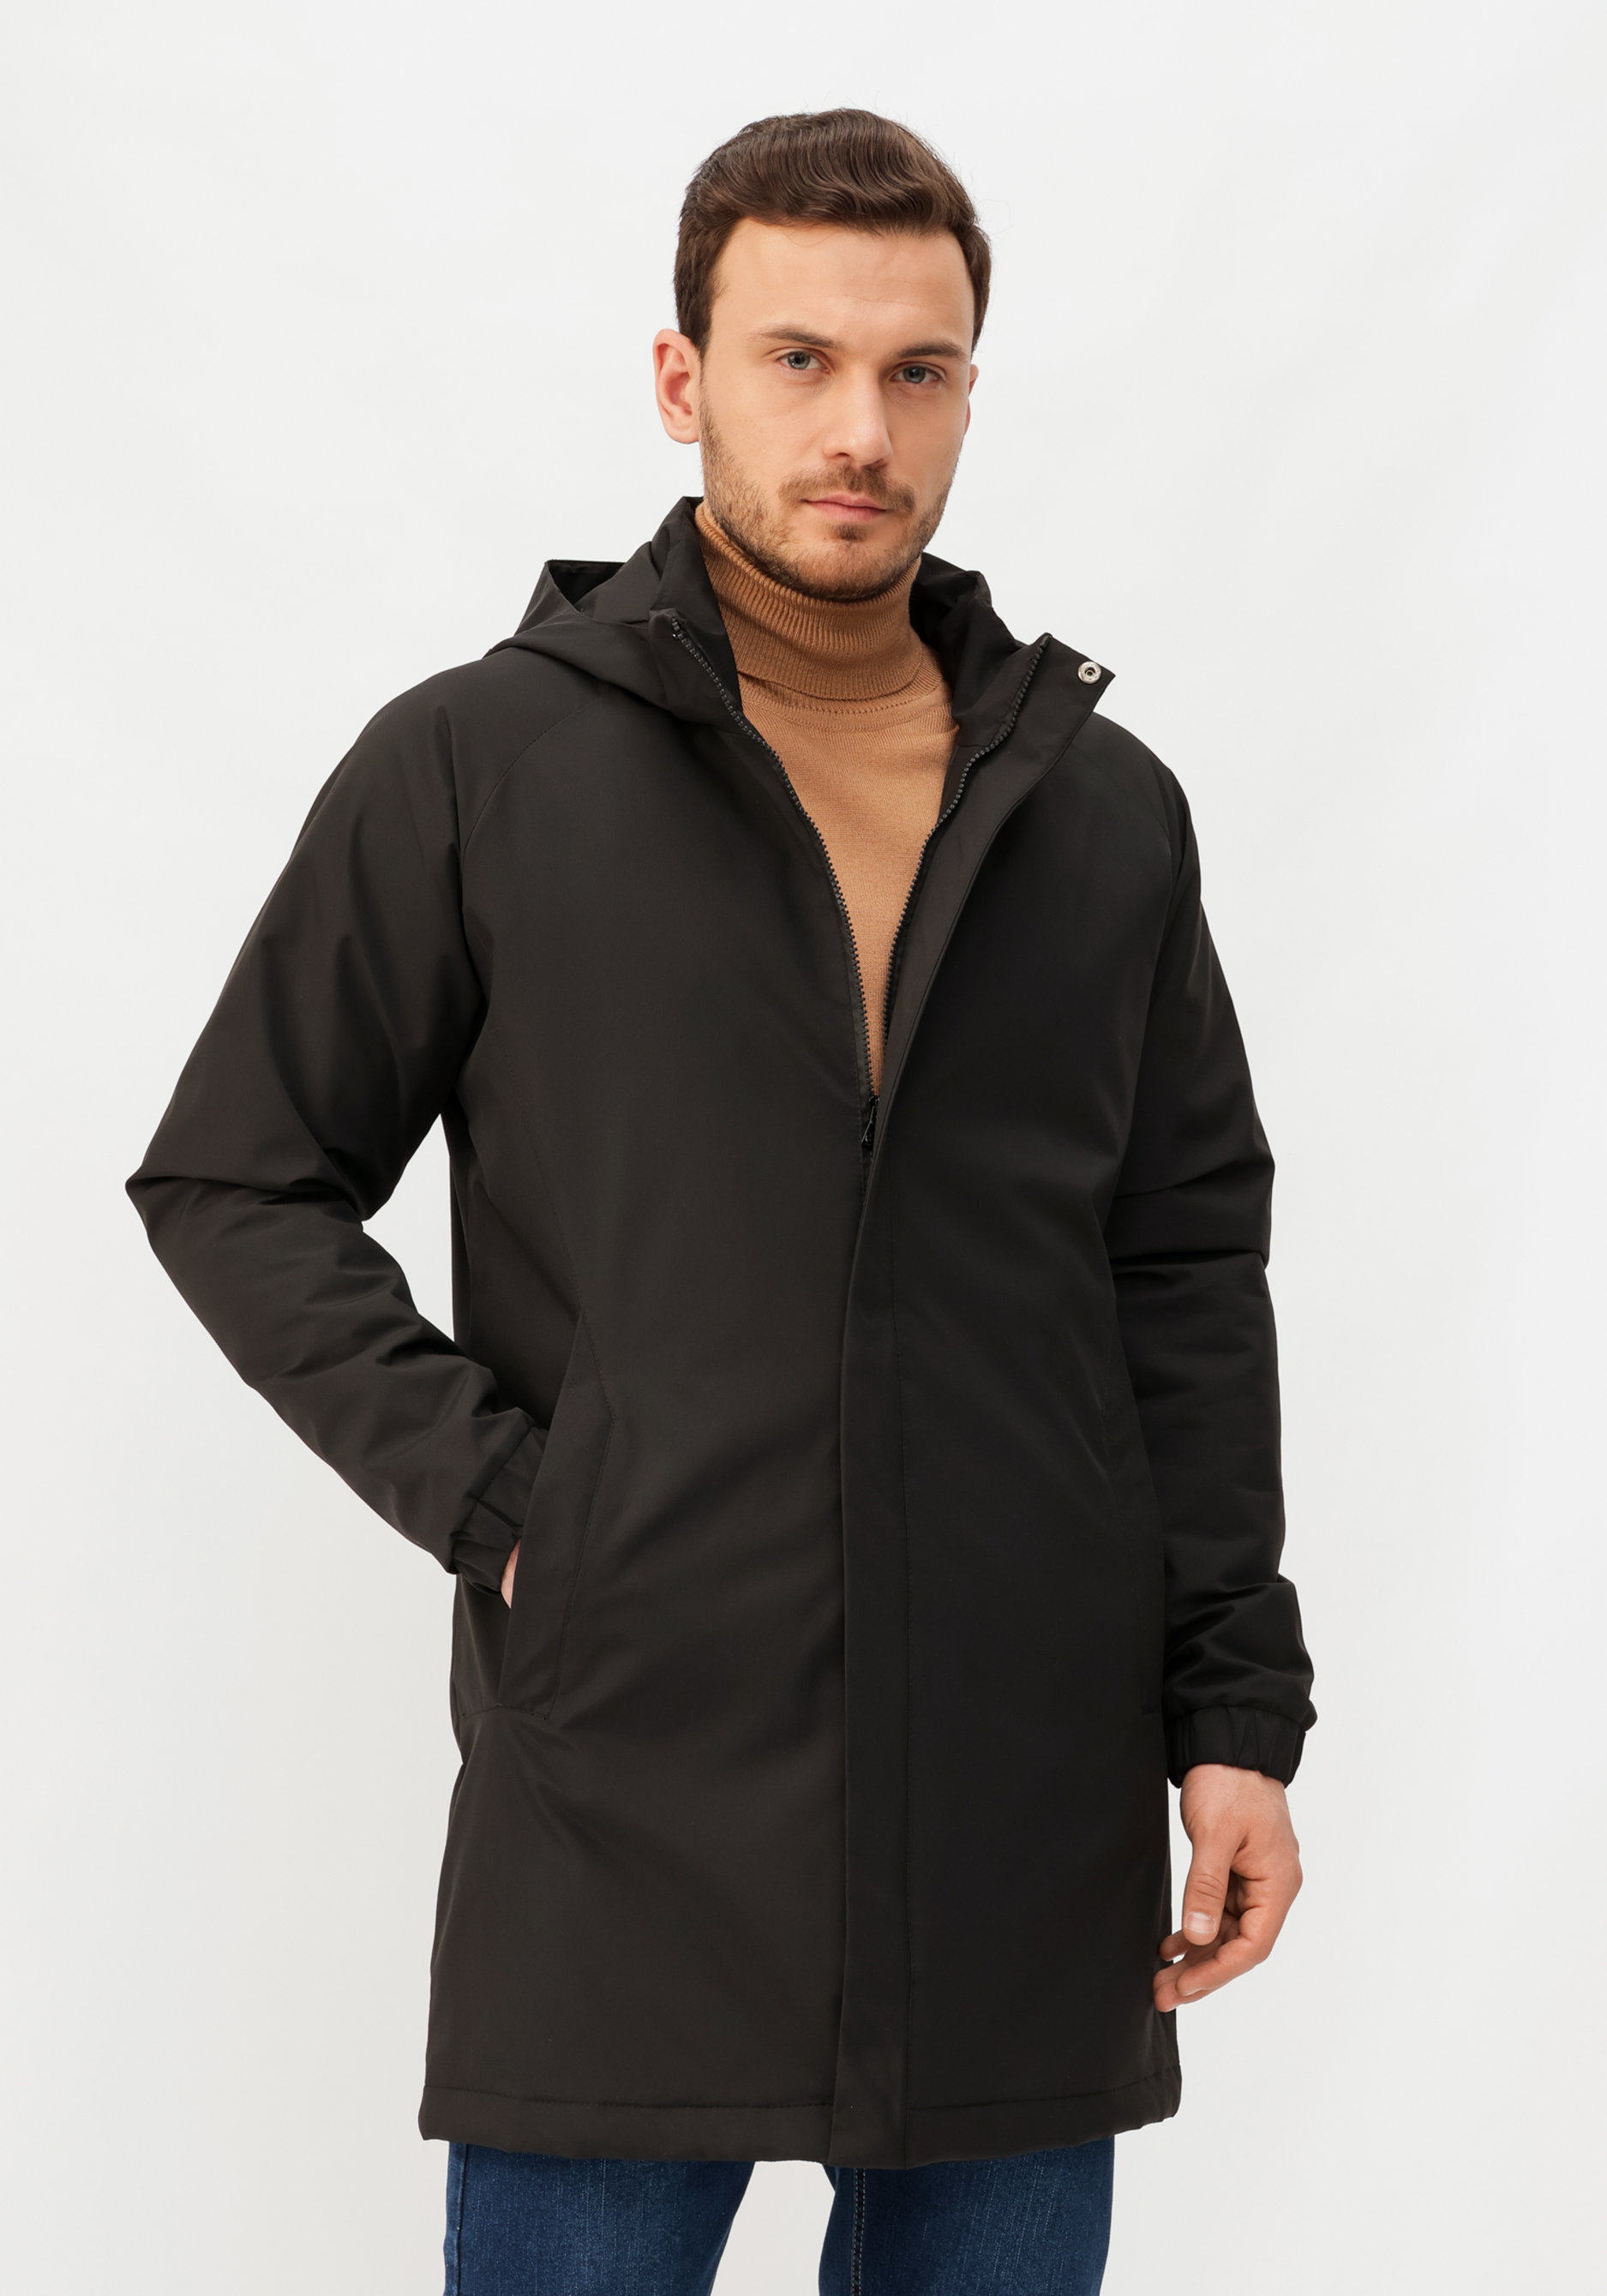 Куртка мужская демисезонная куртка жакет